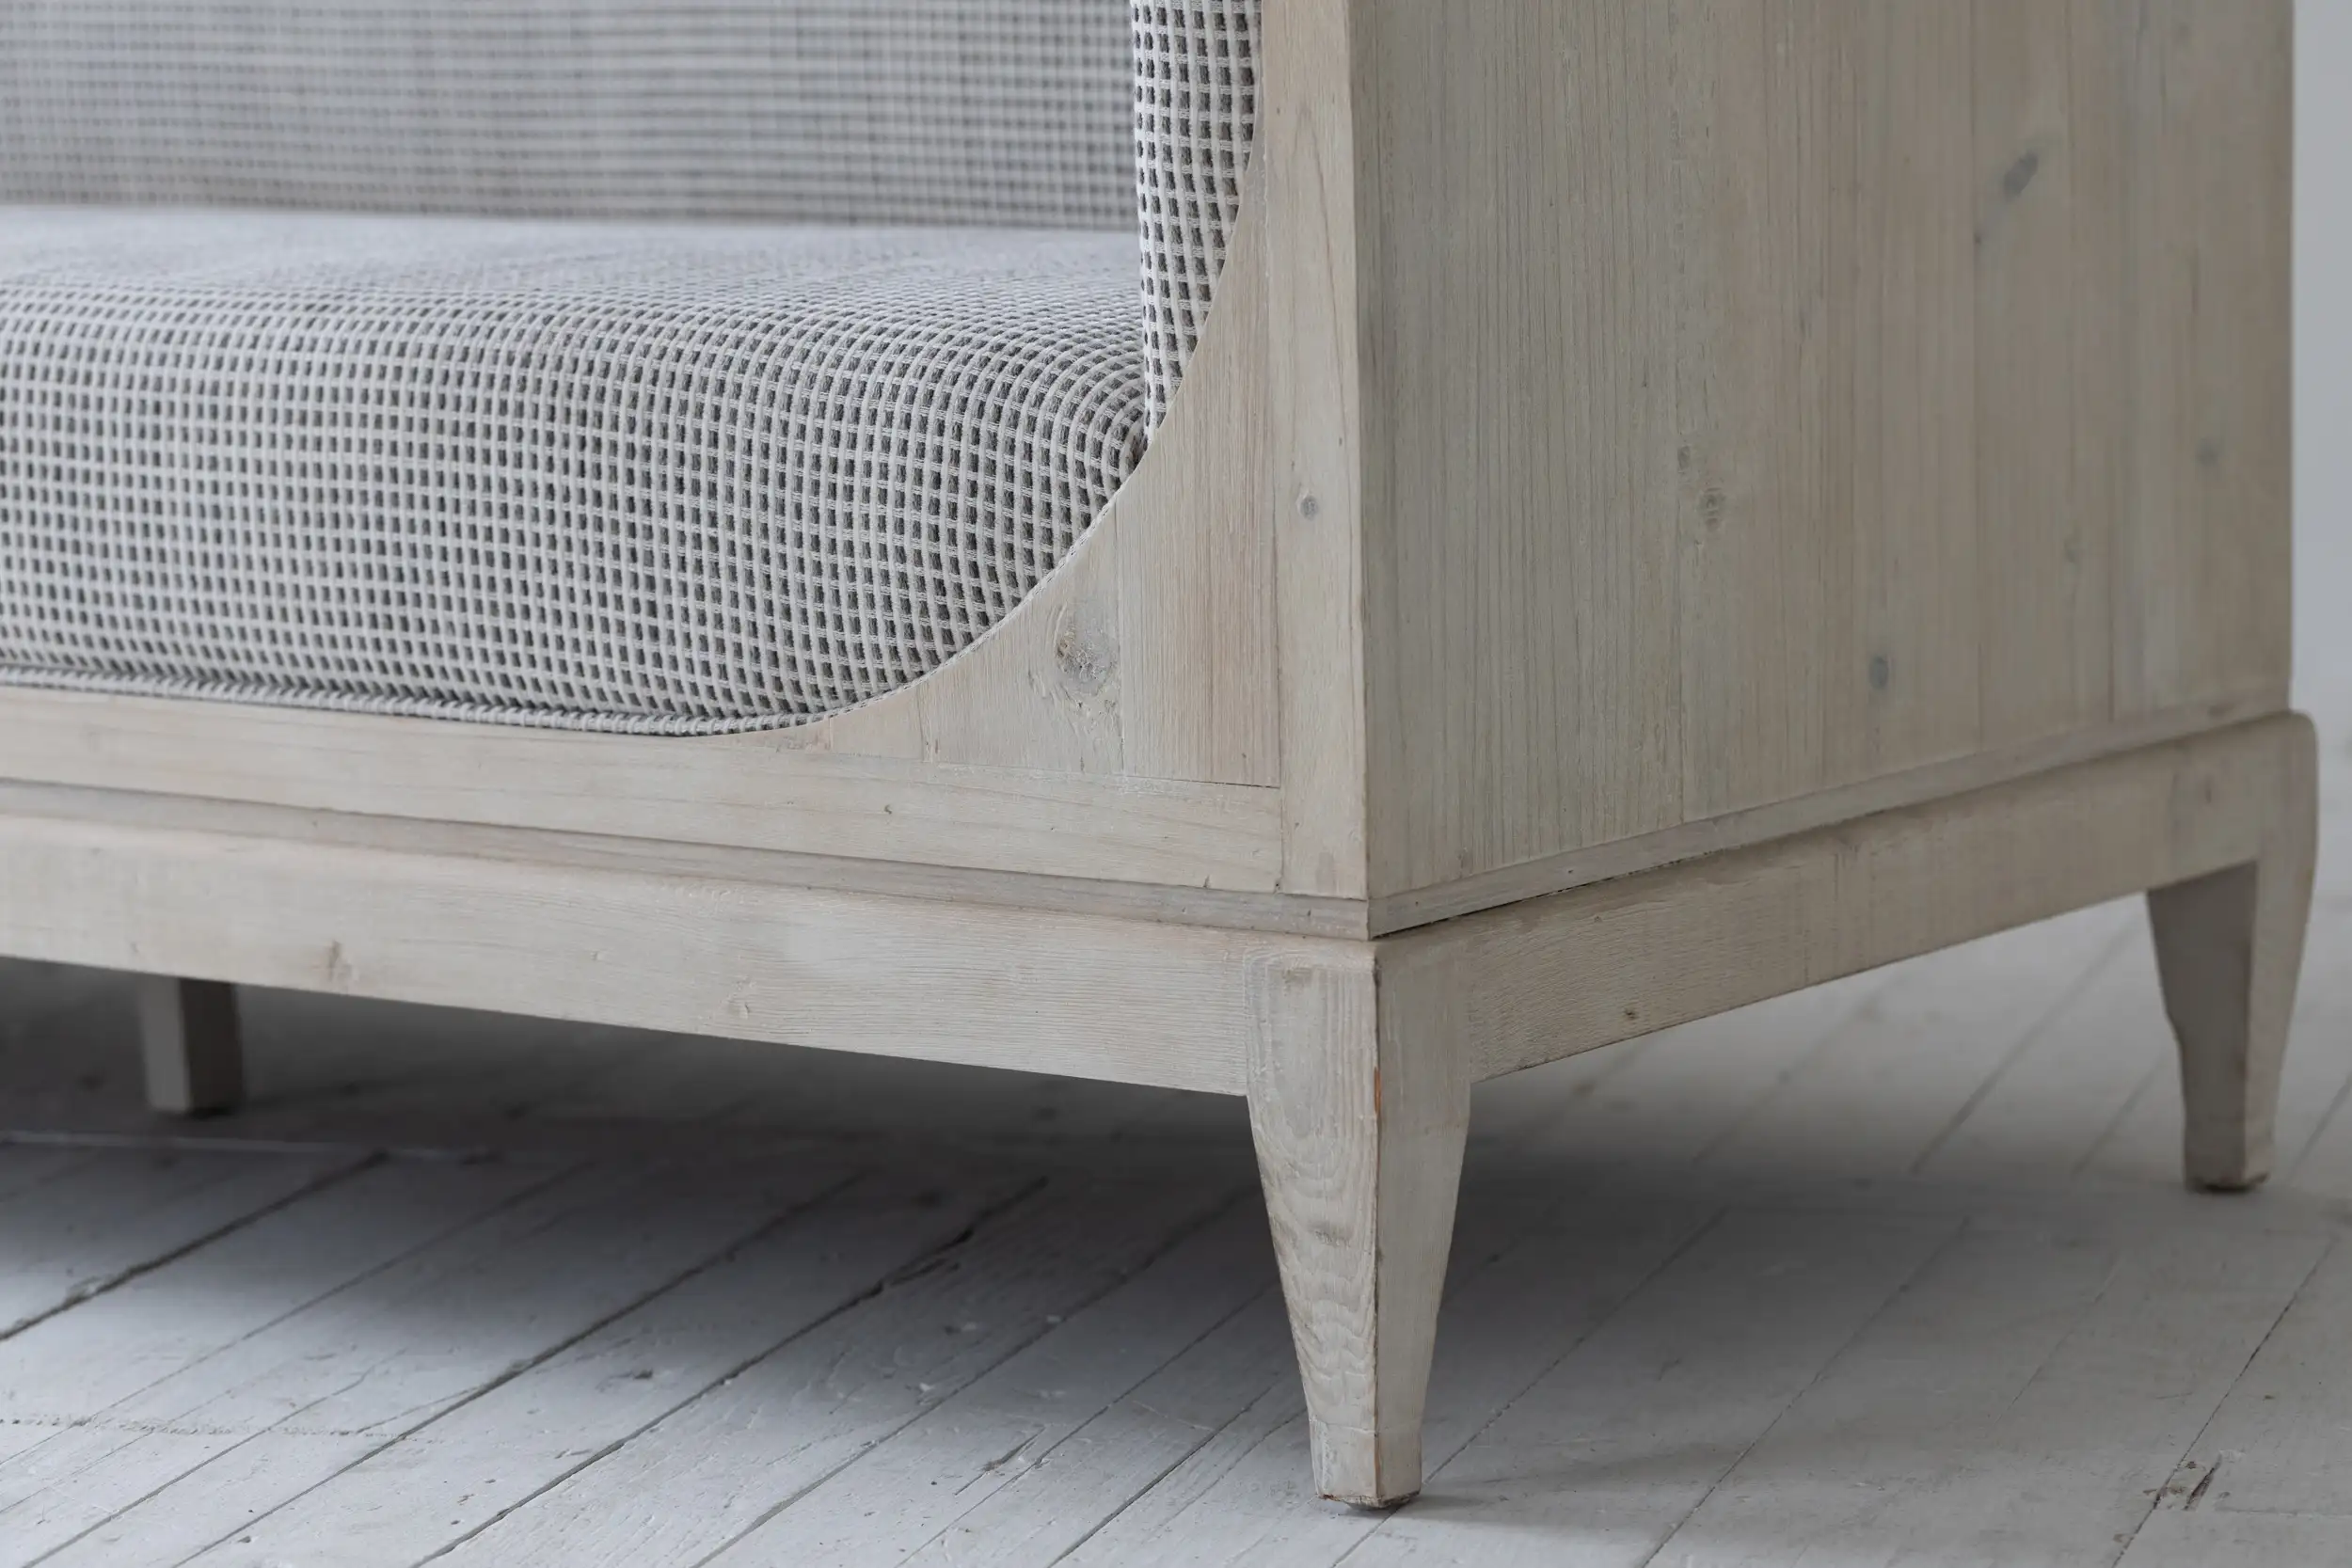 Oturma odası yatak odası vintage stil geri dönüşümlü ahşap çerçeve ücretsiz-ayakta antik plaj beyaz döşemeli İsveç kanepe set mobilya